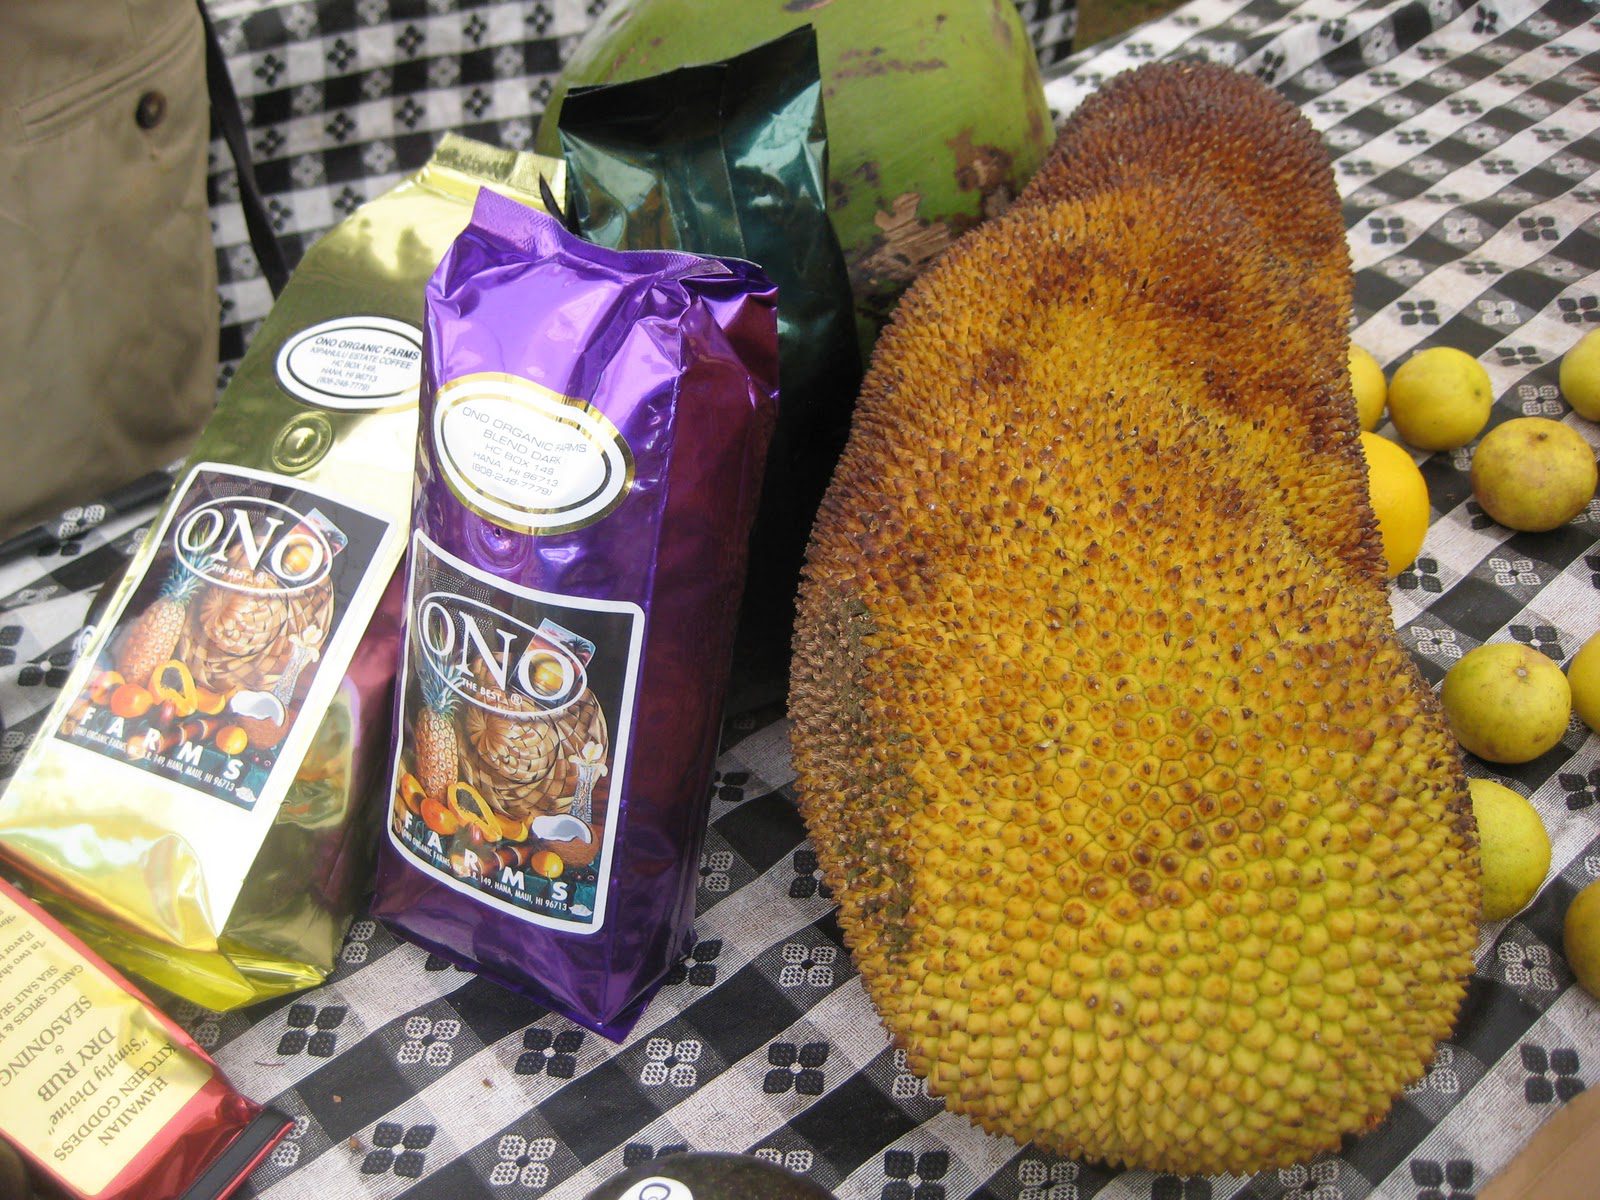 Maui Organic Farms - Jackfrukt och kaffe på ett bord för försäljning